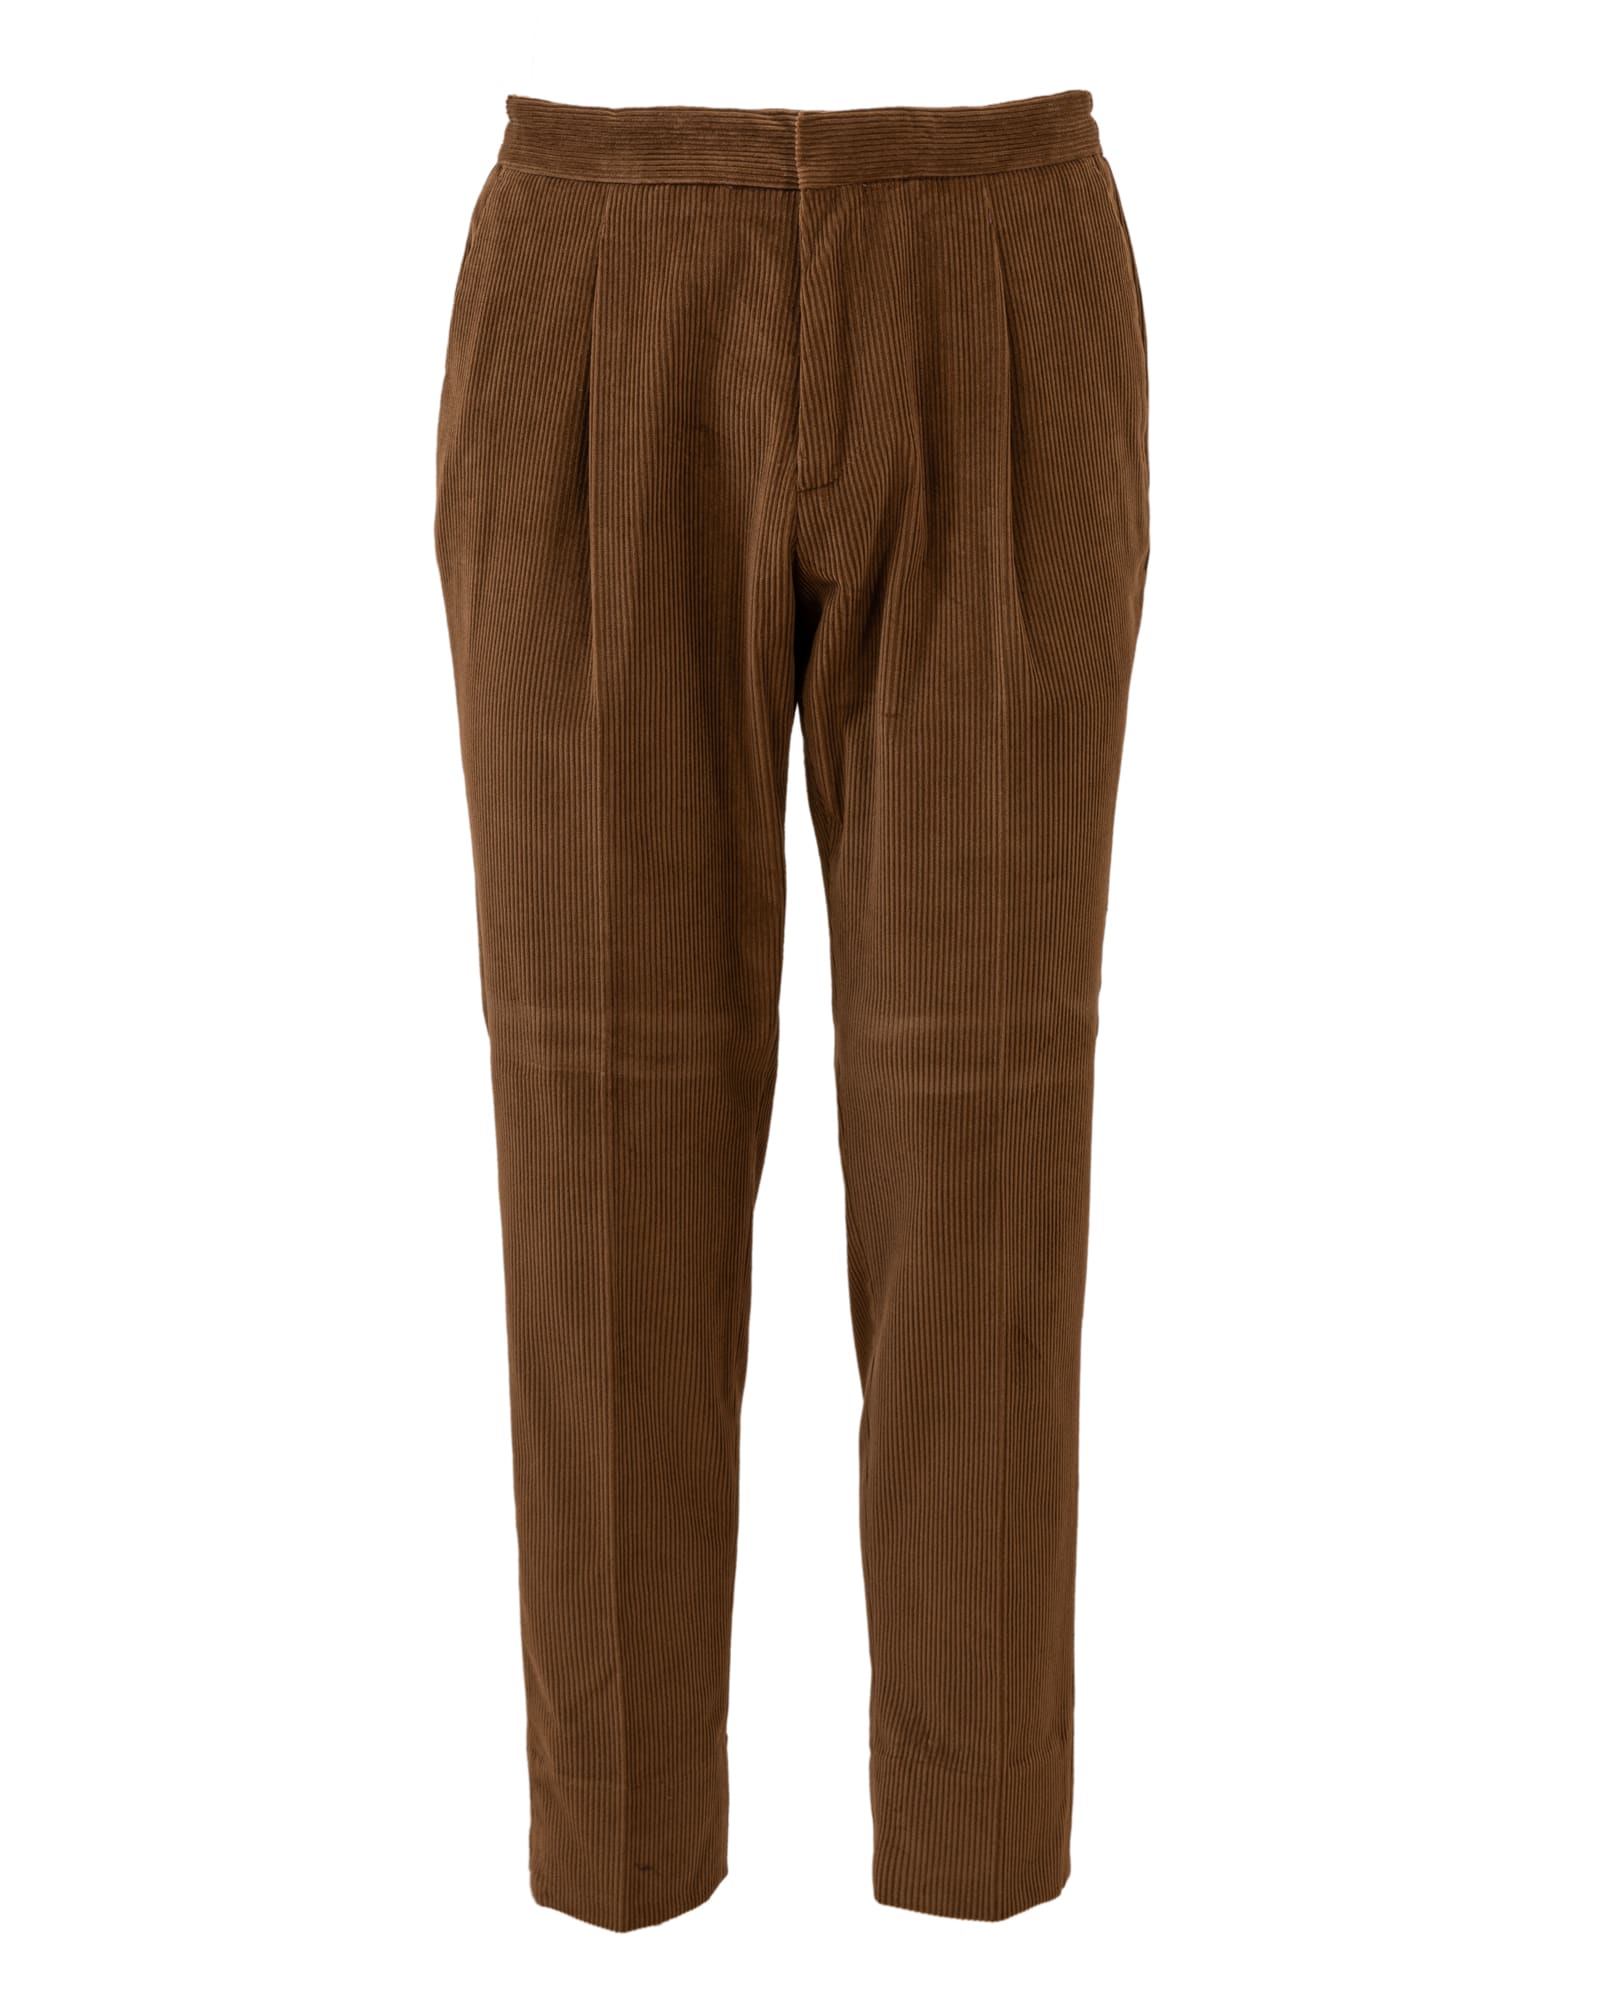 Z Zegna cotton trousers. Regular waist